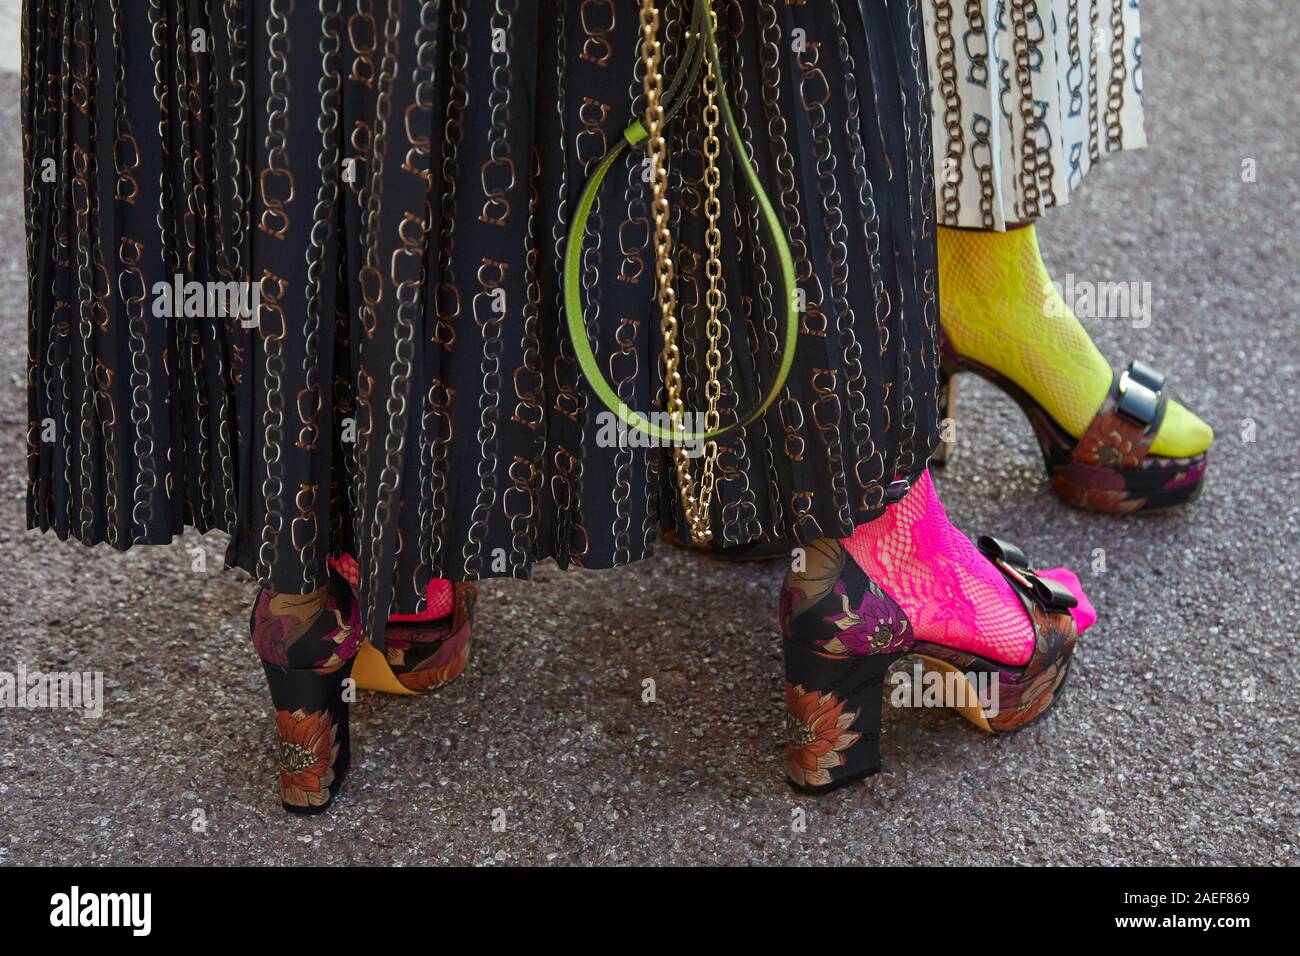 Milán, Italia - 21 de septiembre de 2019: Las mujeres con zapatos de tacón  y calcetines rosas